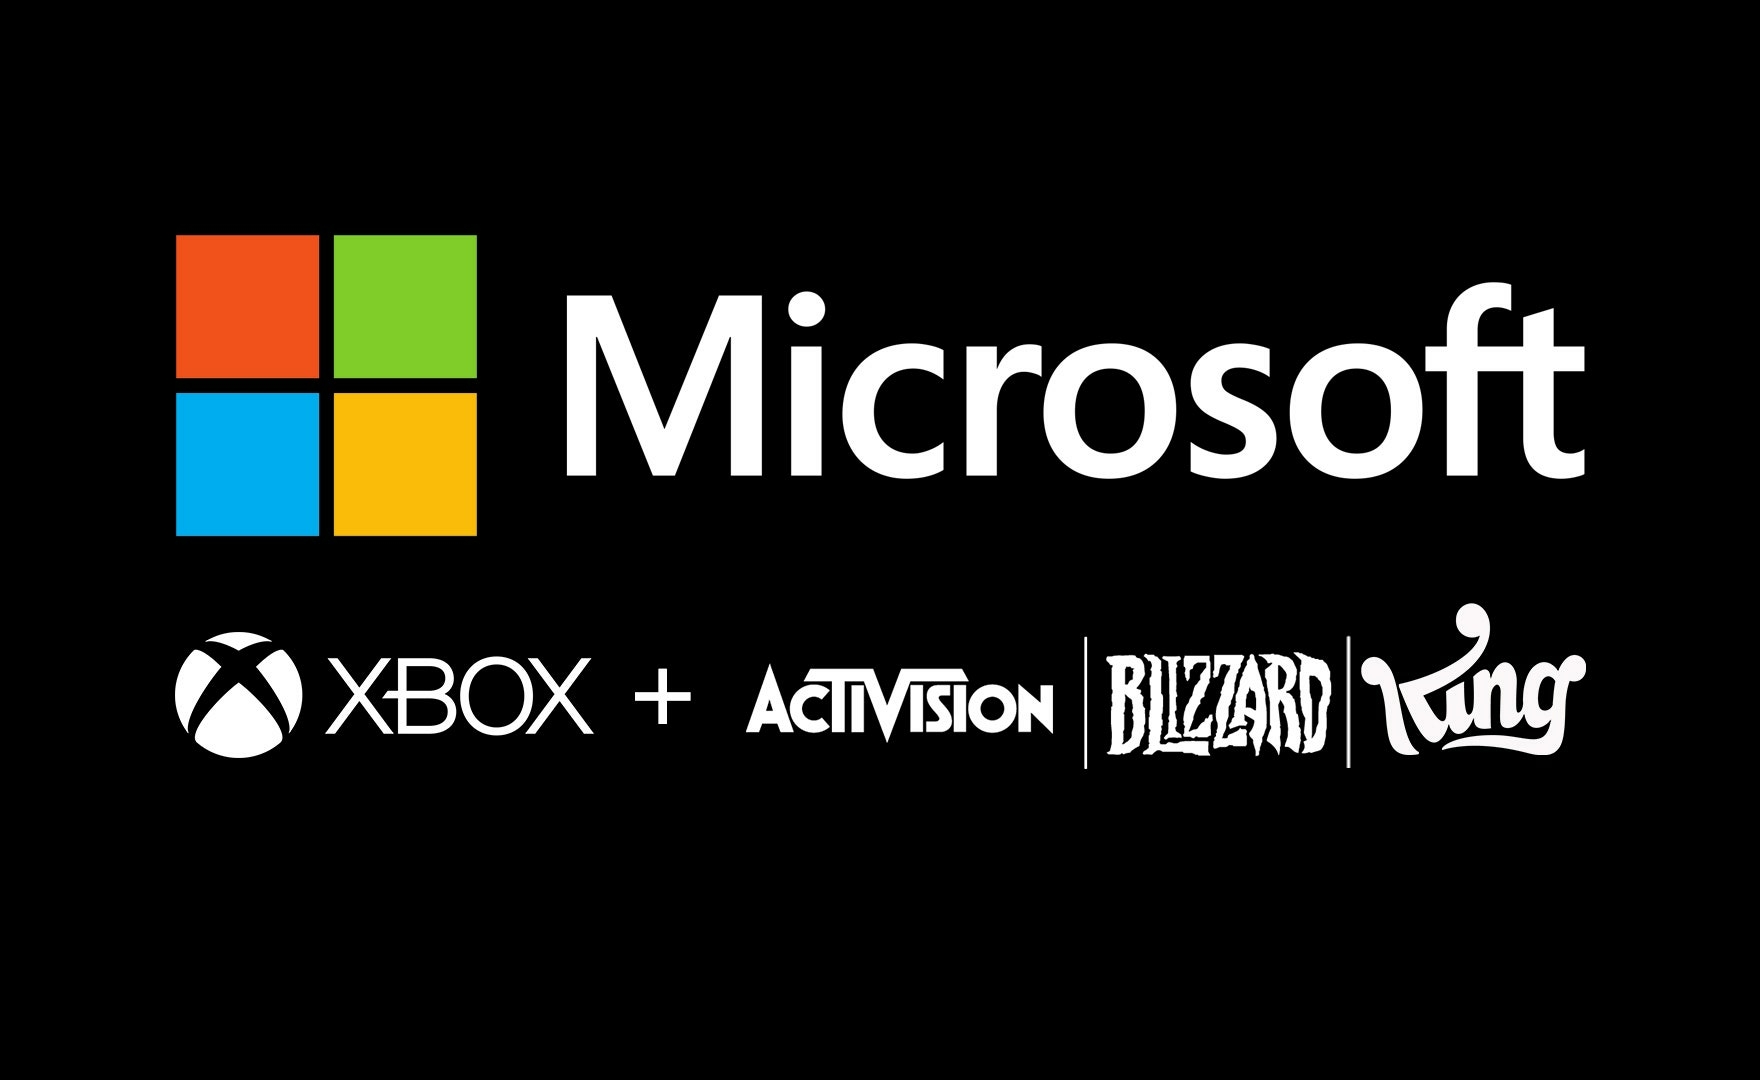 Il trailer di Xbox annuncia ufficialmente l’acquisizione di Activision-Blizzard